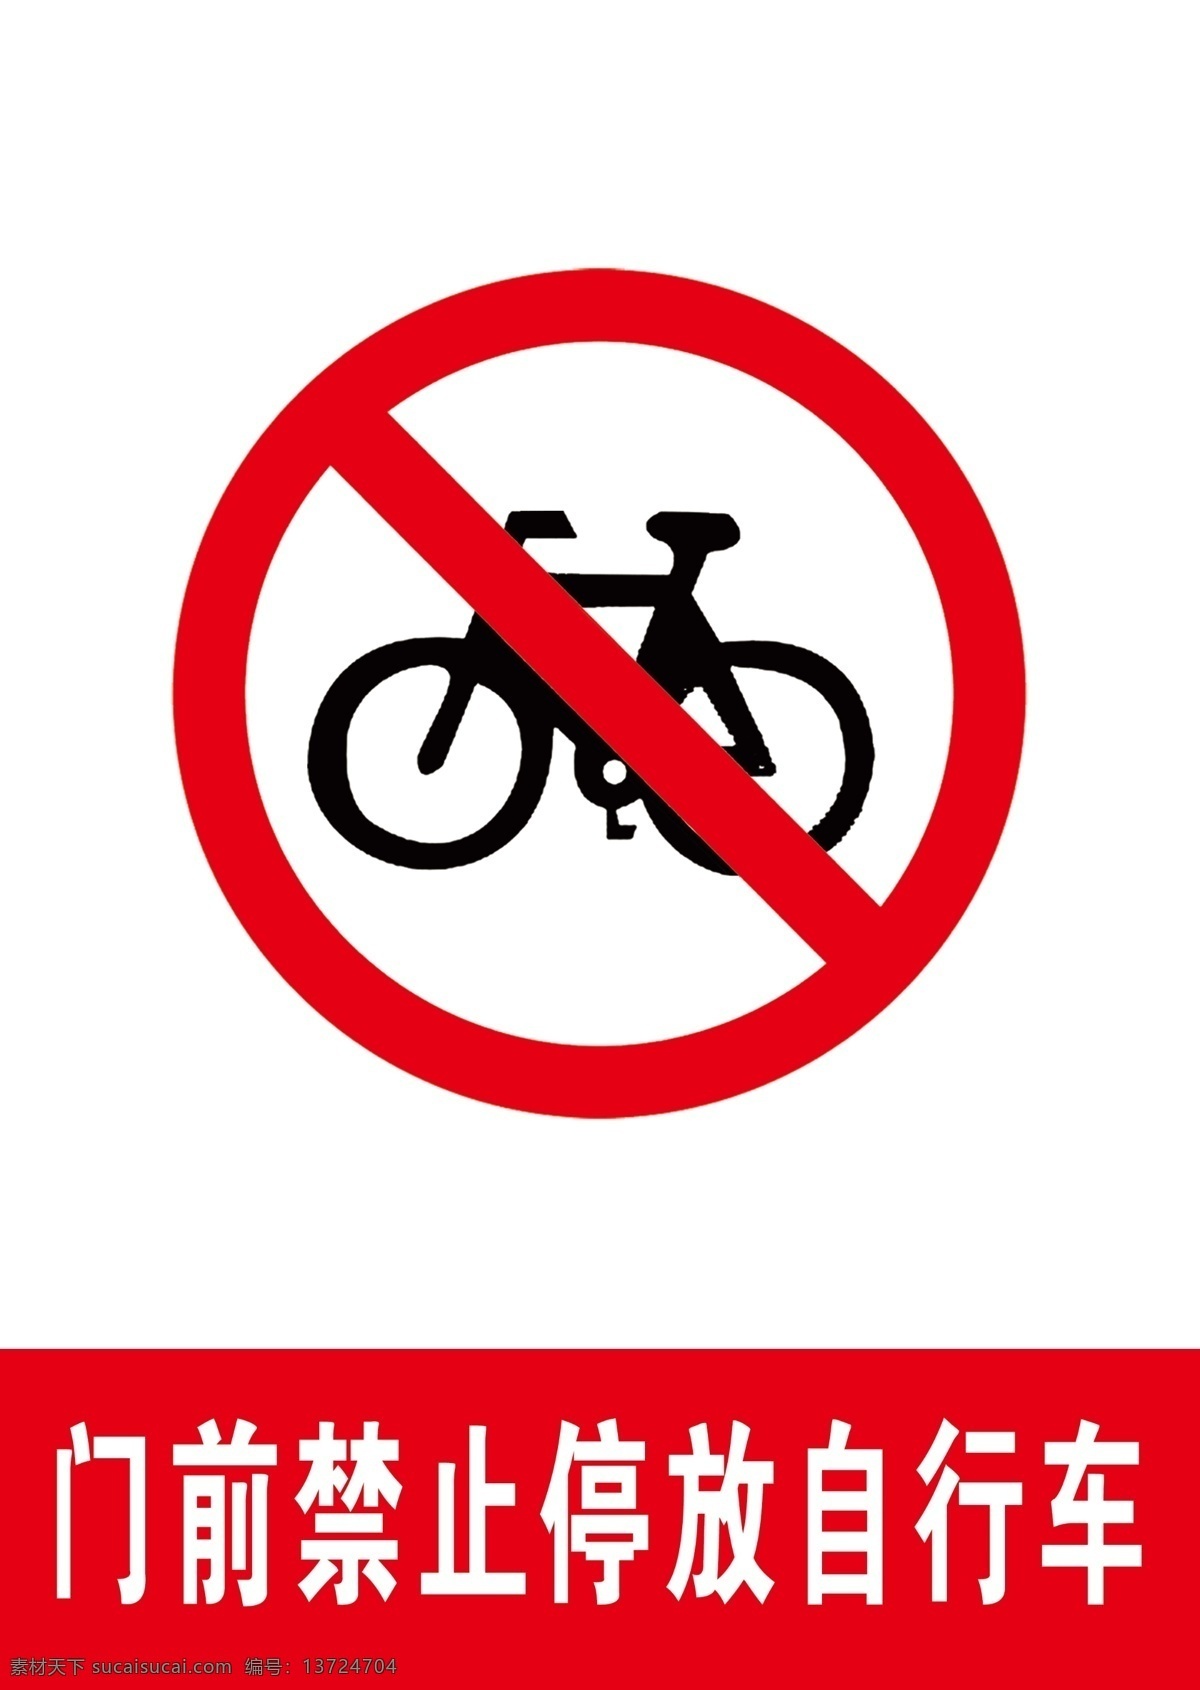 门前 禁止 停放 自行车 禁止停自行车 禁止标识 禁止标识牌 自行车标识 不能停自行车